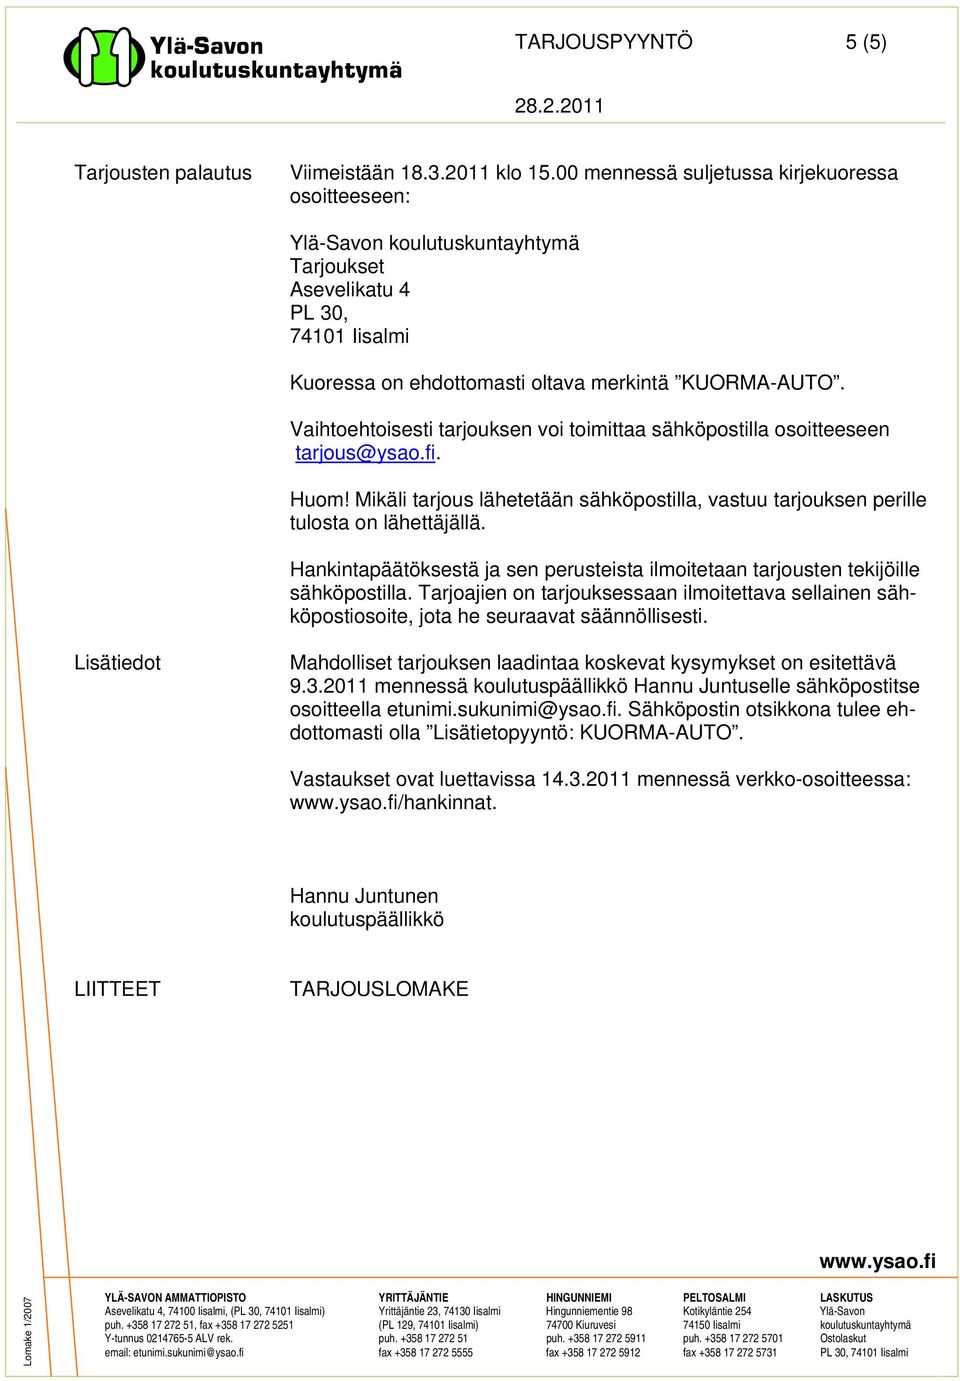 Vaihtoehtoisesti tarjouksen voi toimittaa sähköpostilla osoitteeseen tarjous@ysao.fi. Huom! Mikäli tarjous lähetetään sähköpostilla, vastuu tarjouksen perille tulosta on lähettäjällä.